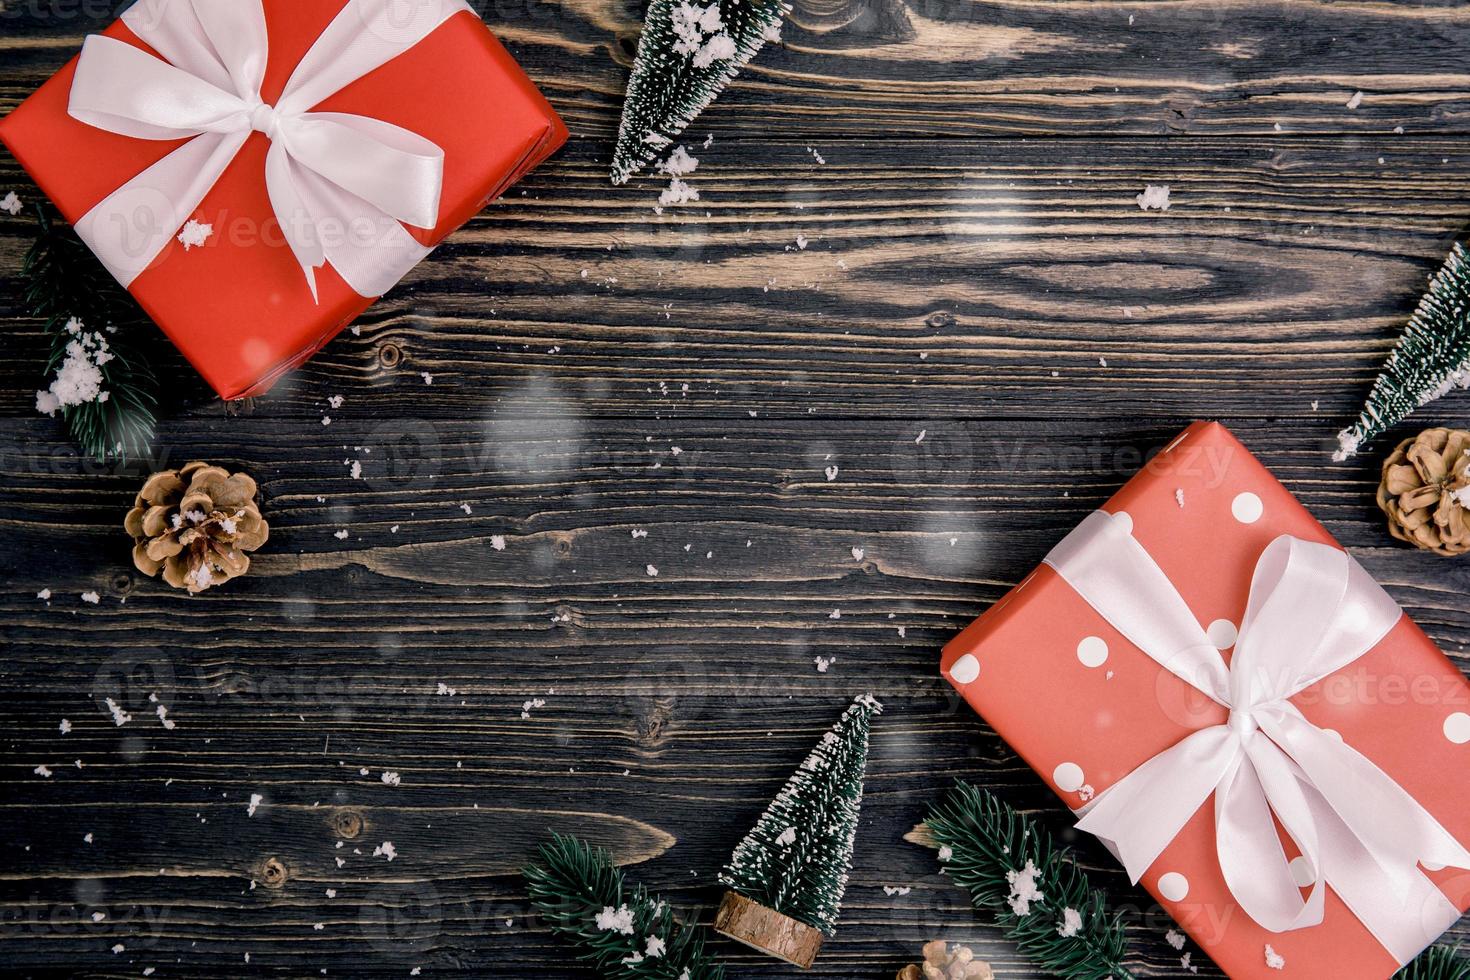 julhelgsammansättning med röd presentförpackning dekoration på träbakgrund, nyår och jul eller årsdag med presenter på träbord i säsong, ovanifrån eller platt lay. foto